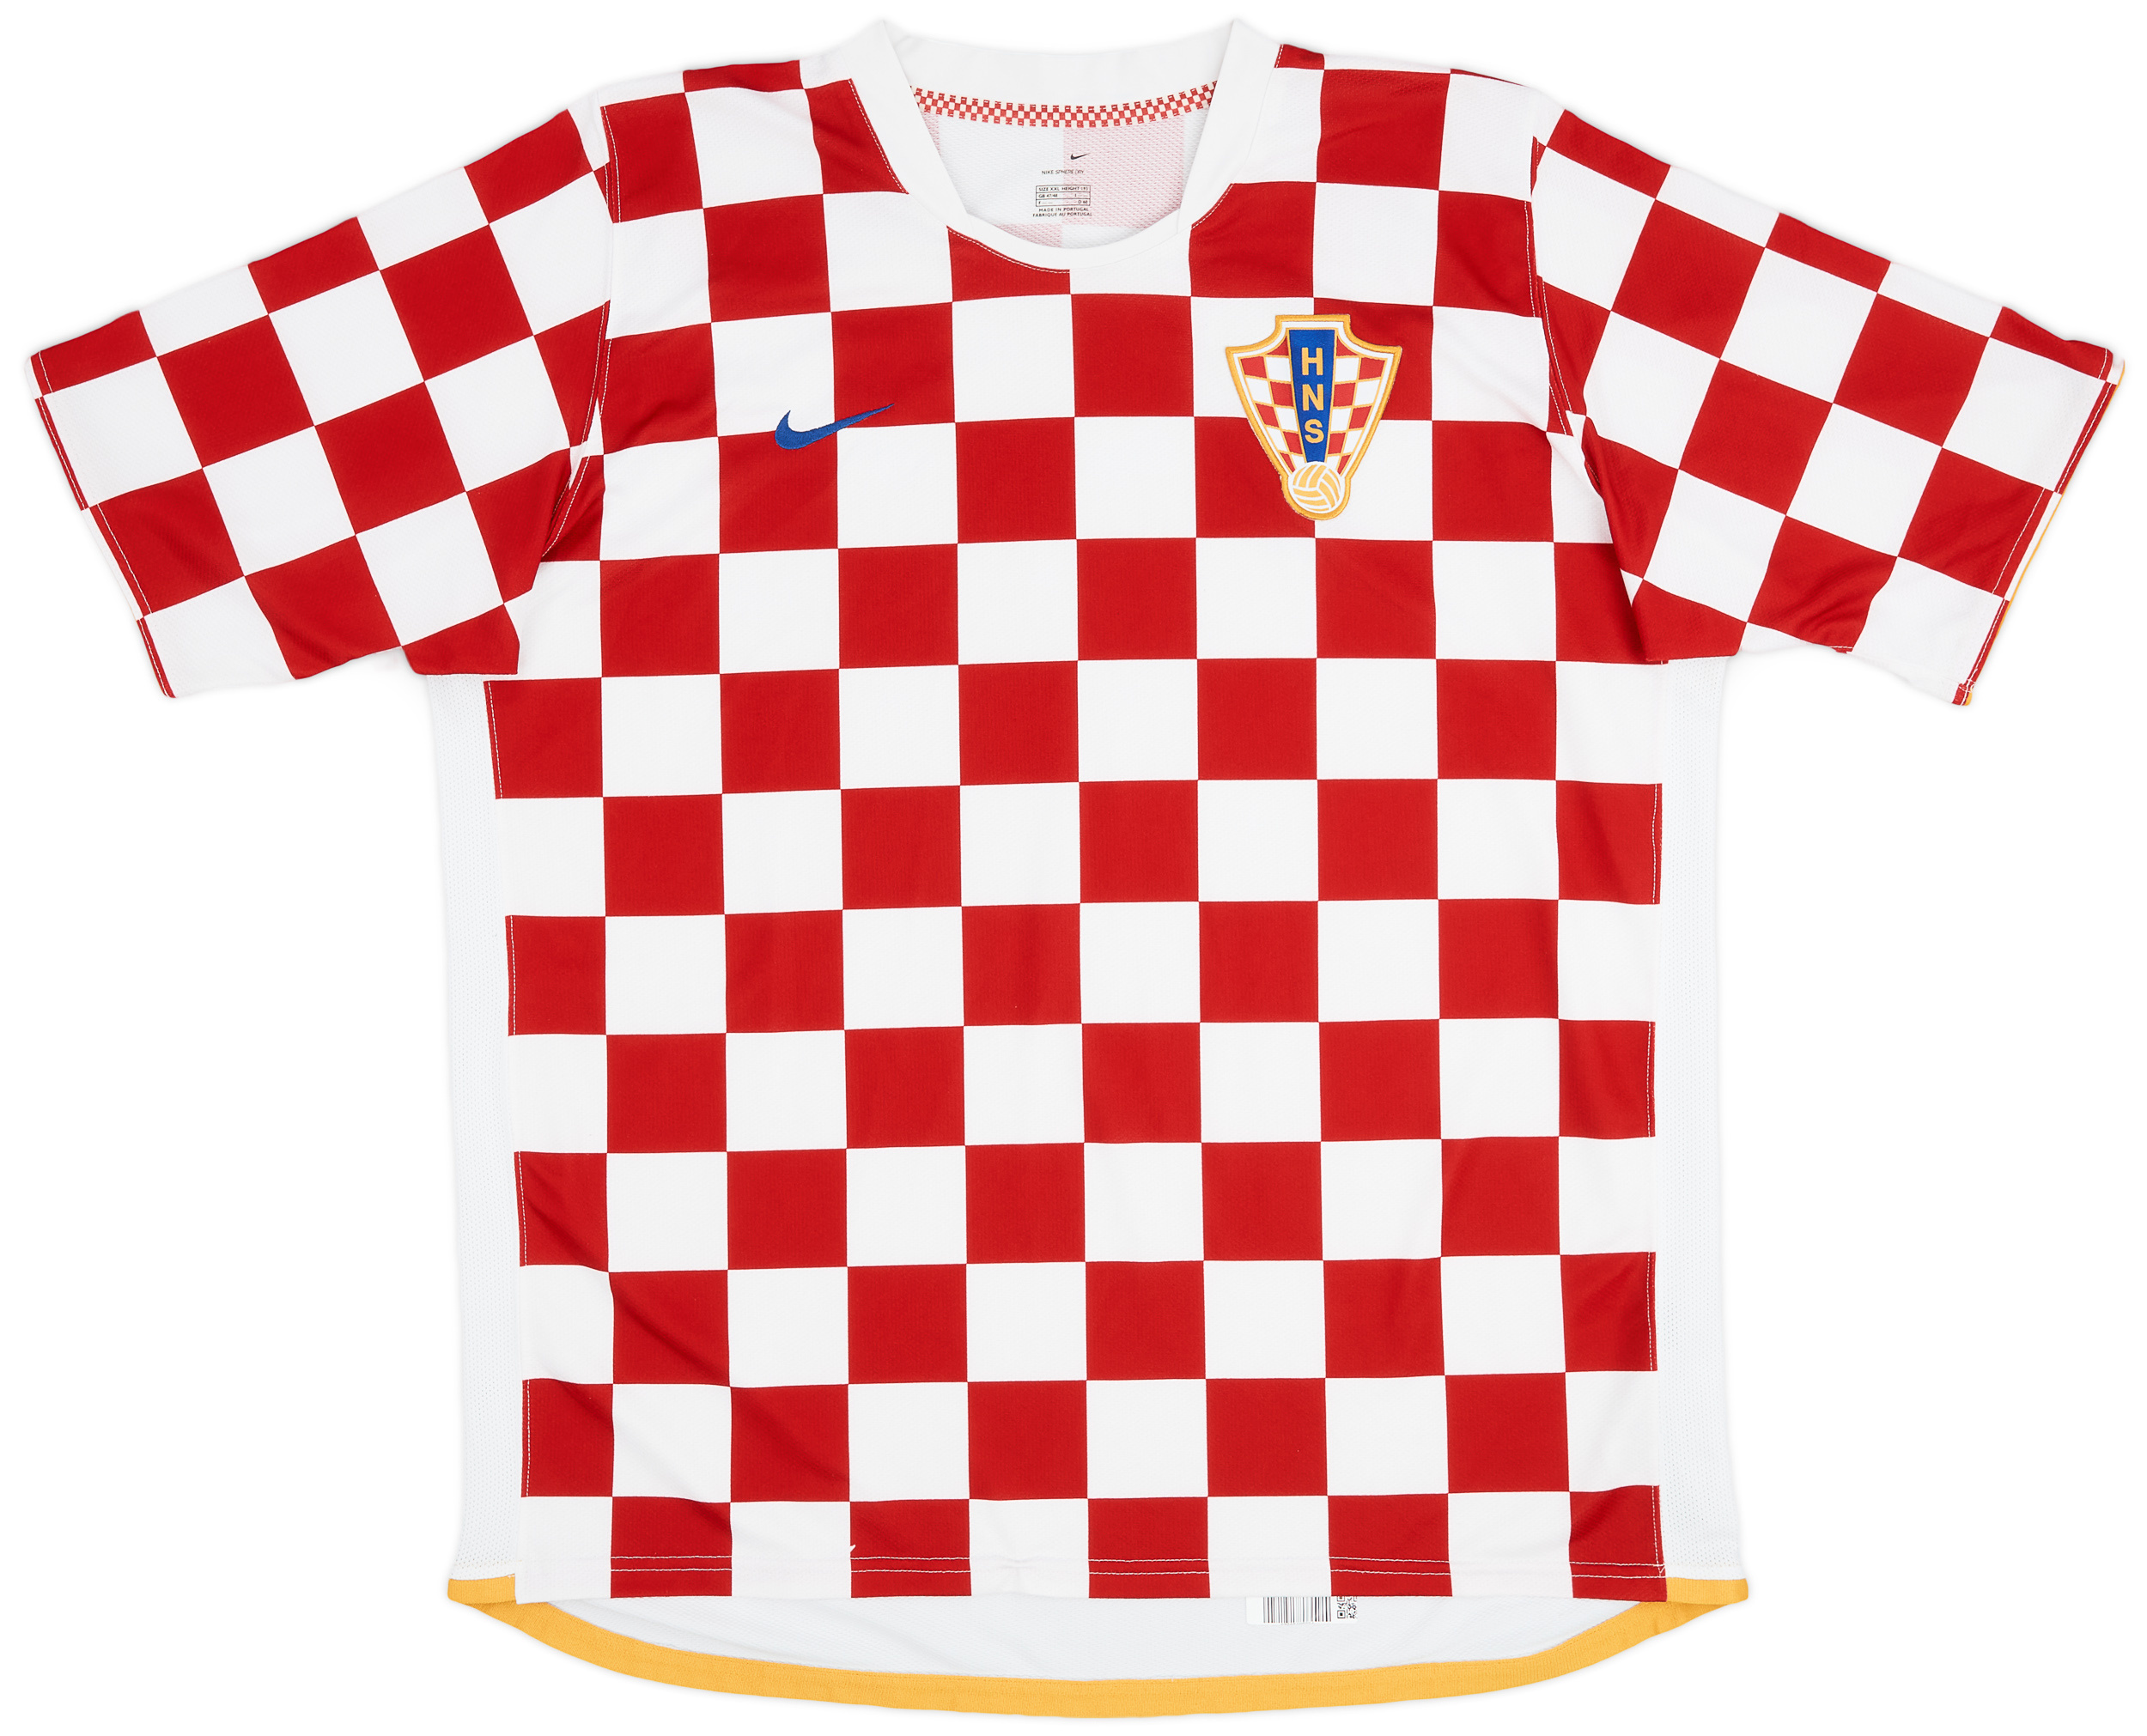 2006-08 Croatia Home Shirt - 9/10 - ()